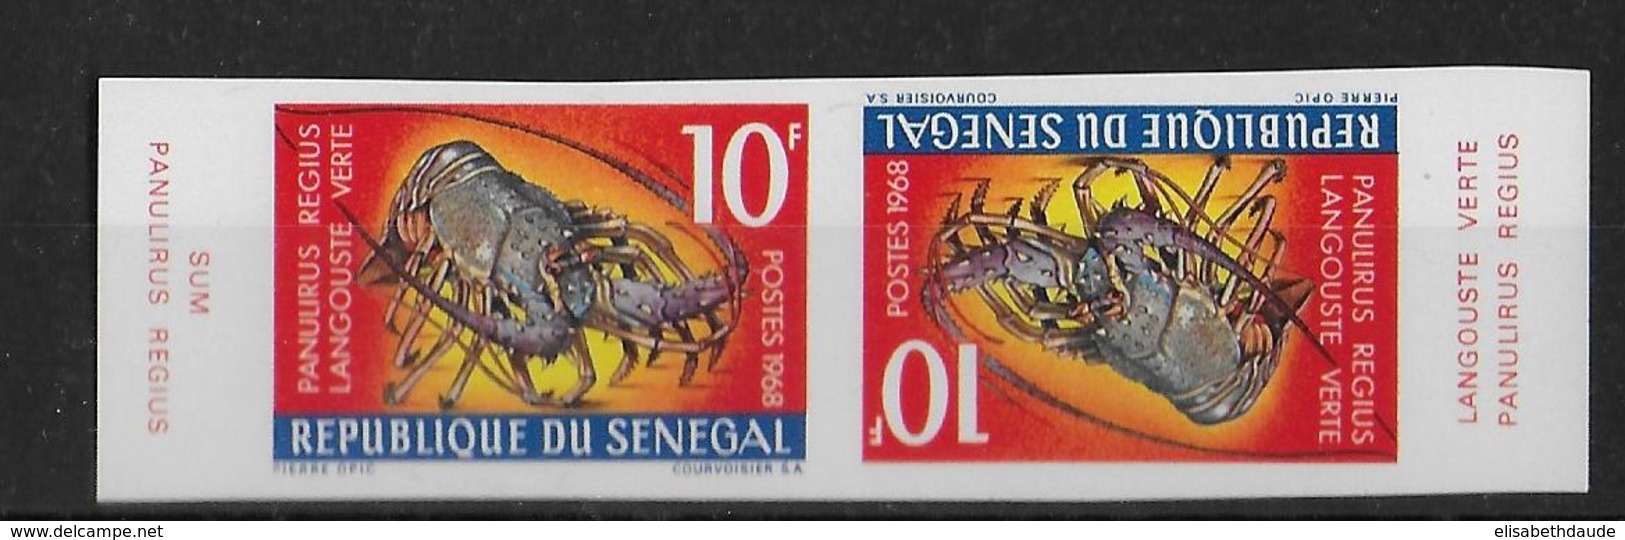 SENEGAL - CRUSTACES FAUNE MARINE - YT 305 PAIRE TETE-BECHE ** NON DENTELE - RARE - Sénégal (1960-...)